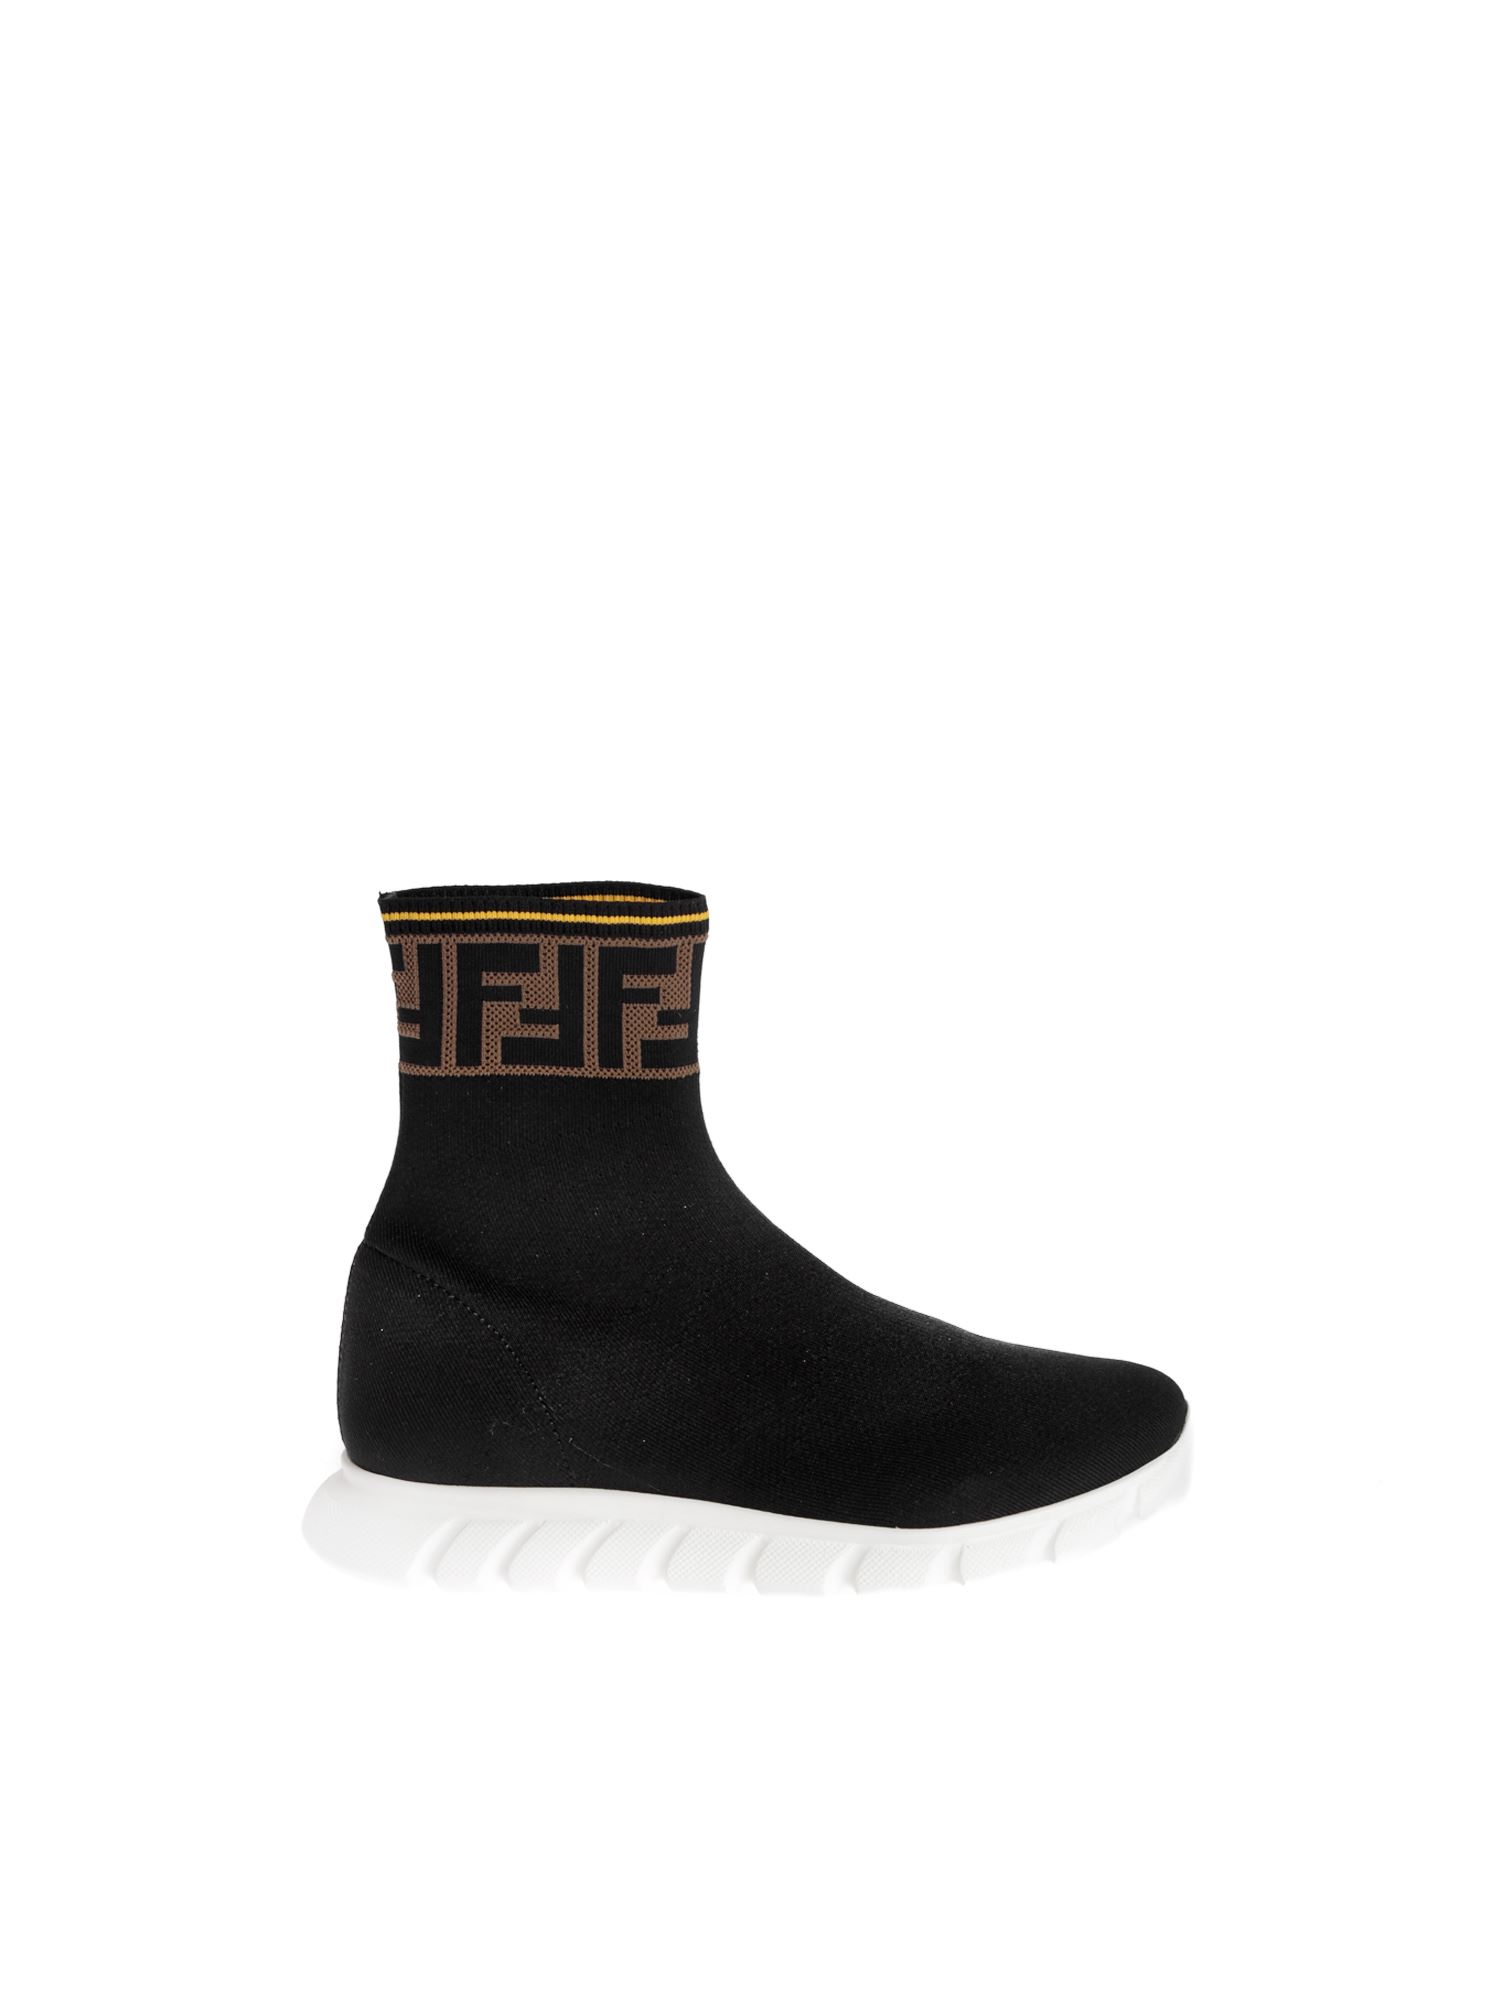 Fendi | FENDI 男童黑色高筒袜运动鞋 JMR322-A62L-F15GD商品图片,4.3折起